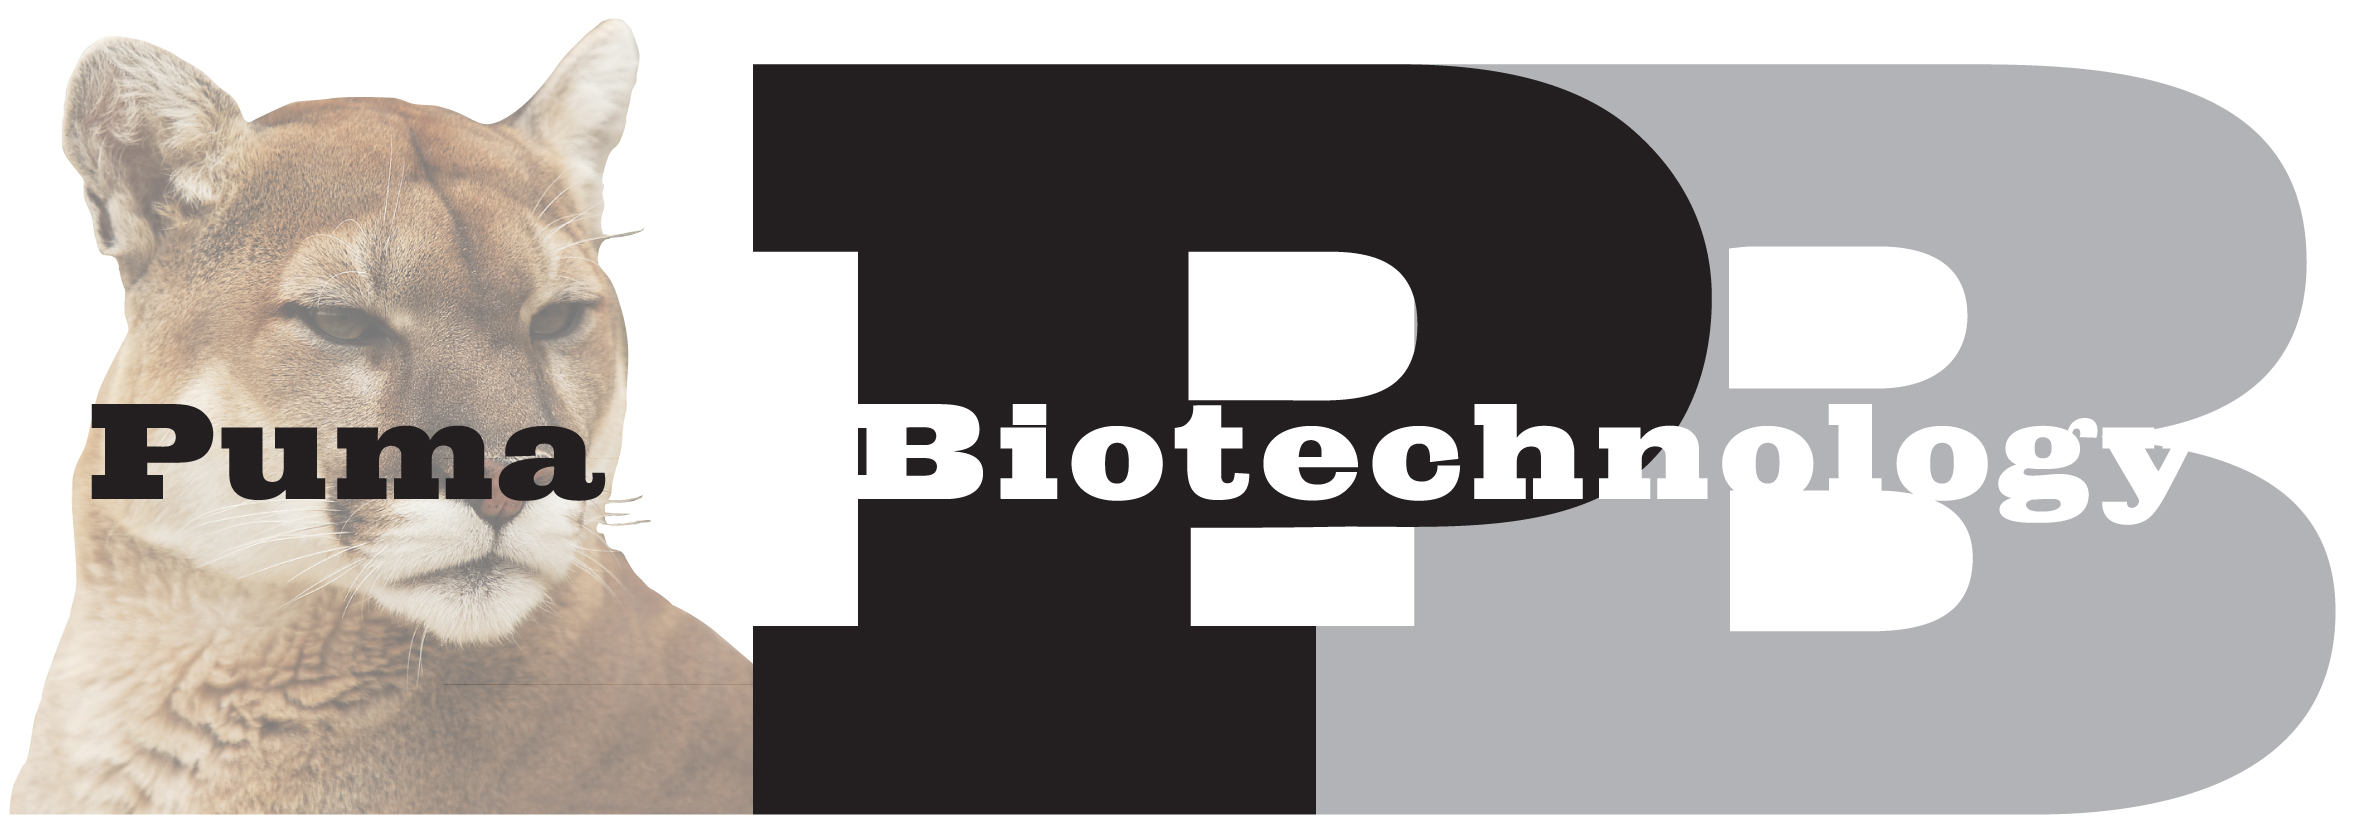 puma biotechnology news